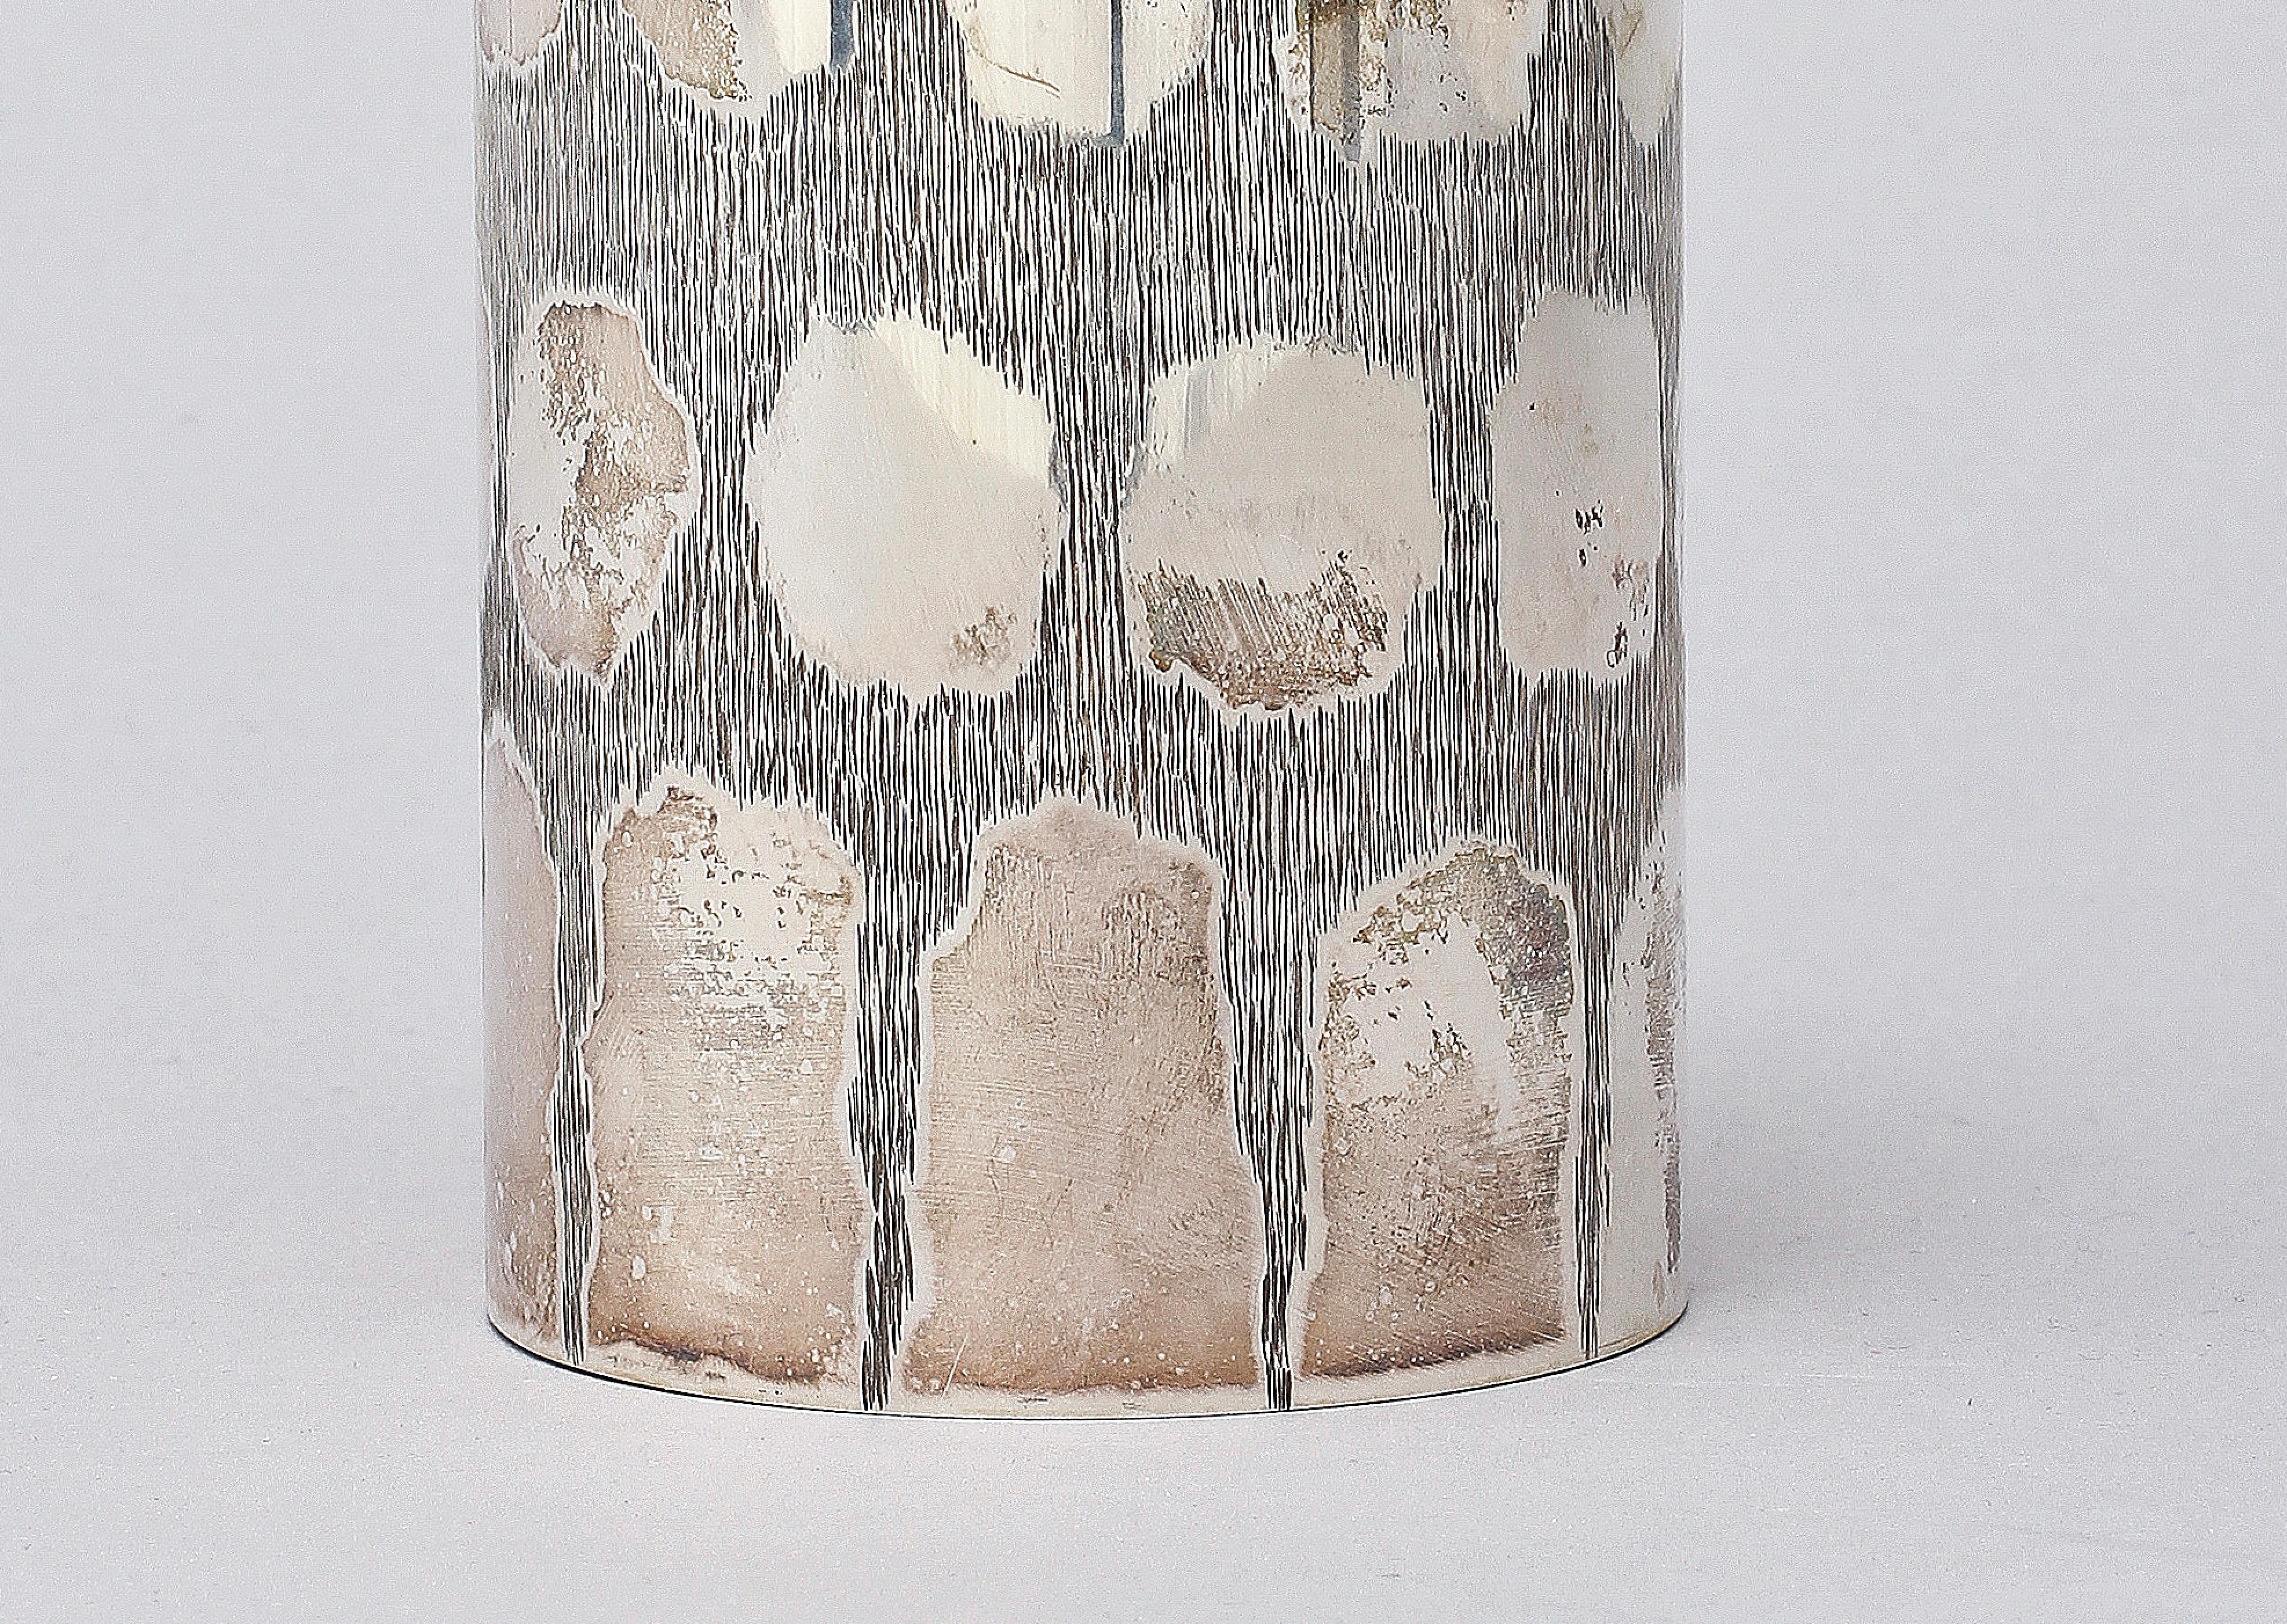 Eine Vase aus Sterlingsilber, hergestellt in Schweden in den 60er Jahren von Gewe malmo.
Kann als Vase oder Stiftebox verwendet werden 
Handgeschnitzt, guter Zustand.
 